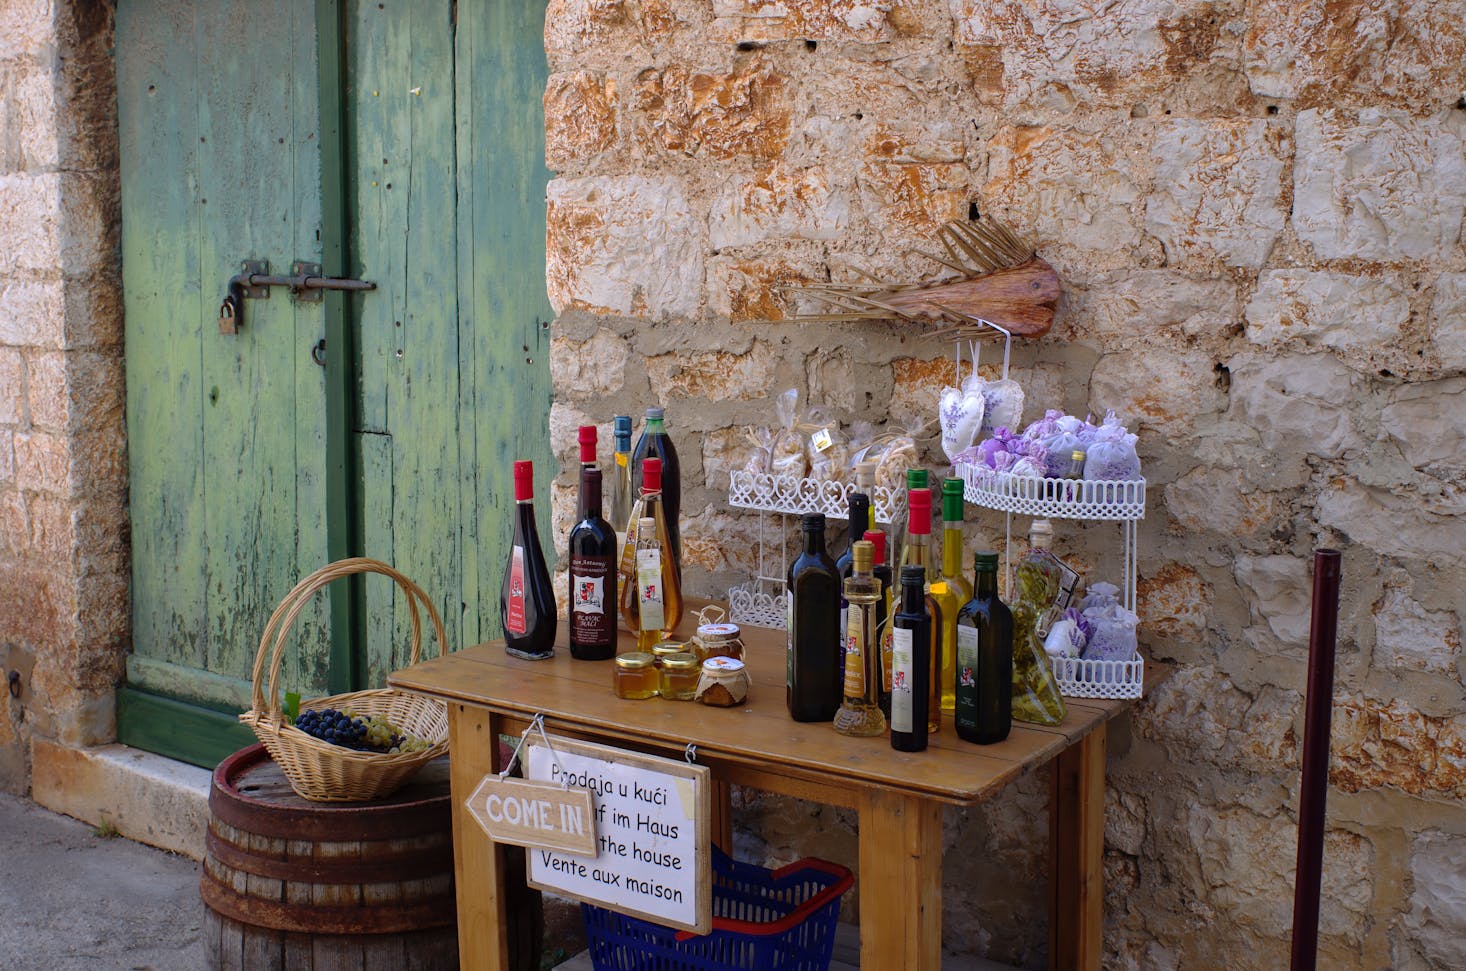 Croatia wine tasting